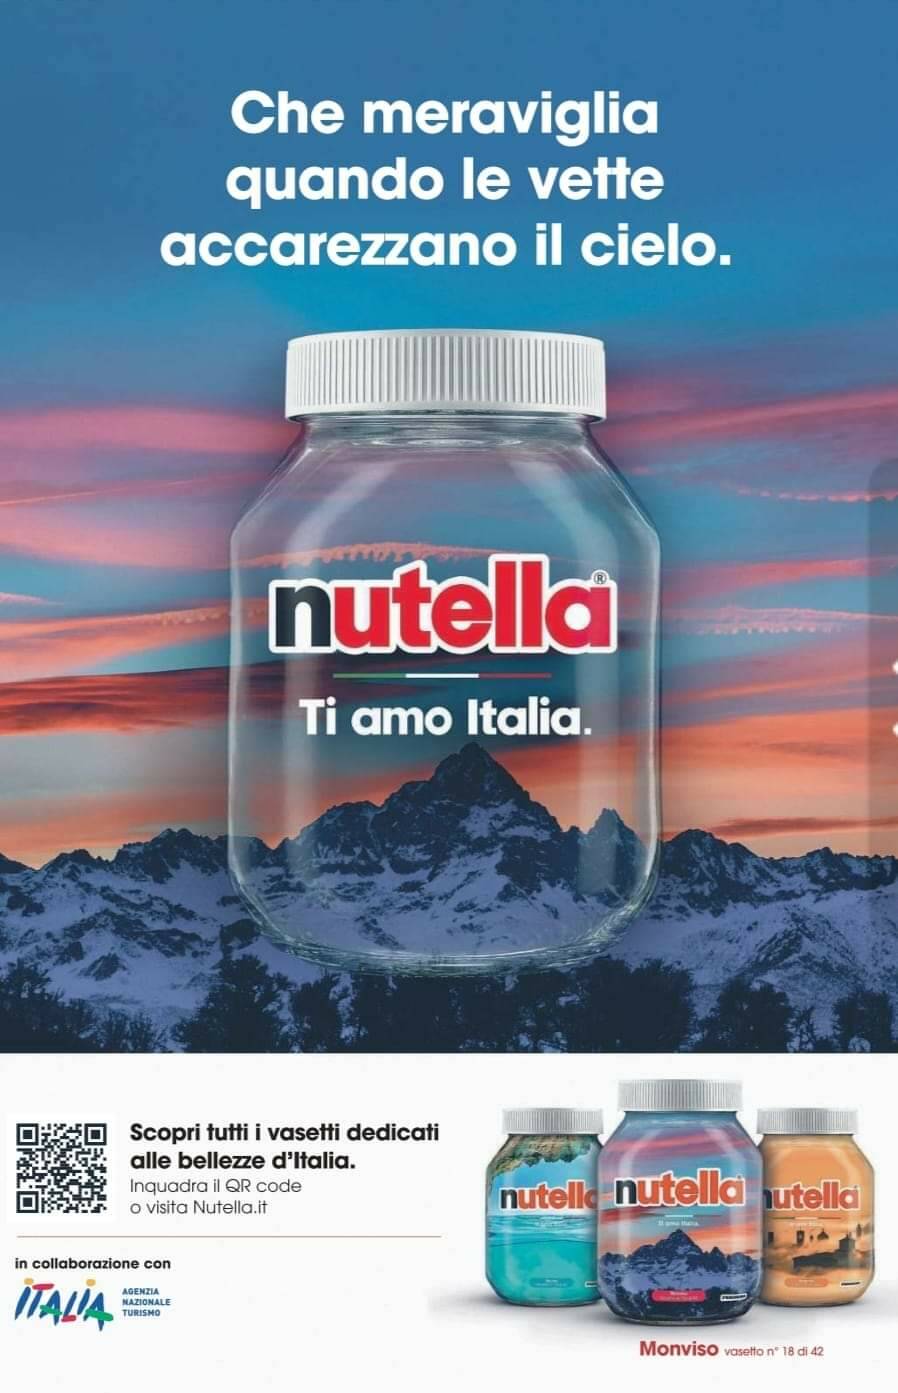 Il Monviso è l’immagine simbolo della nuova campagna pubblicitaria della Nutella